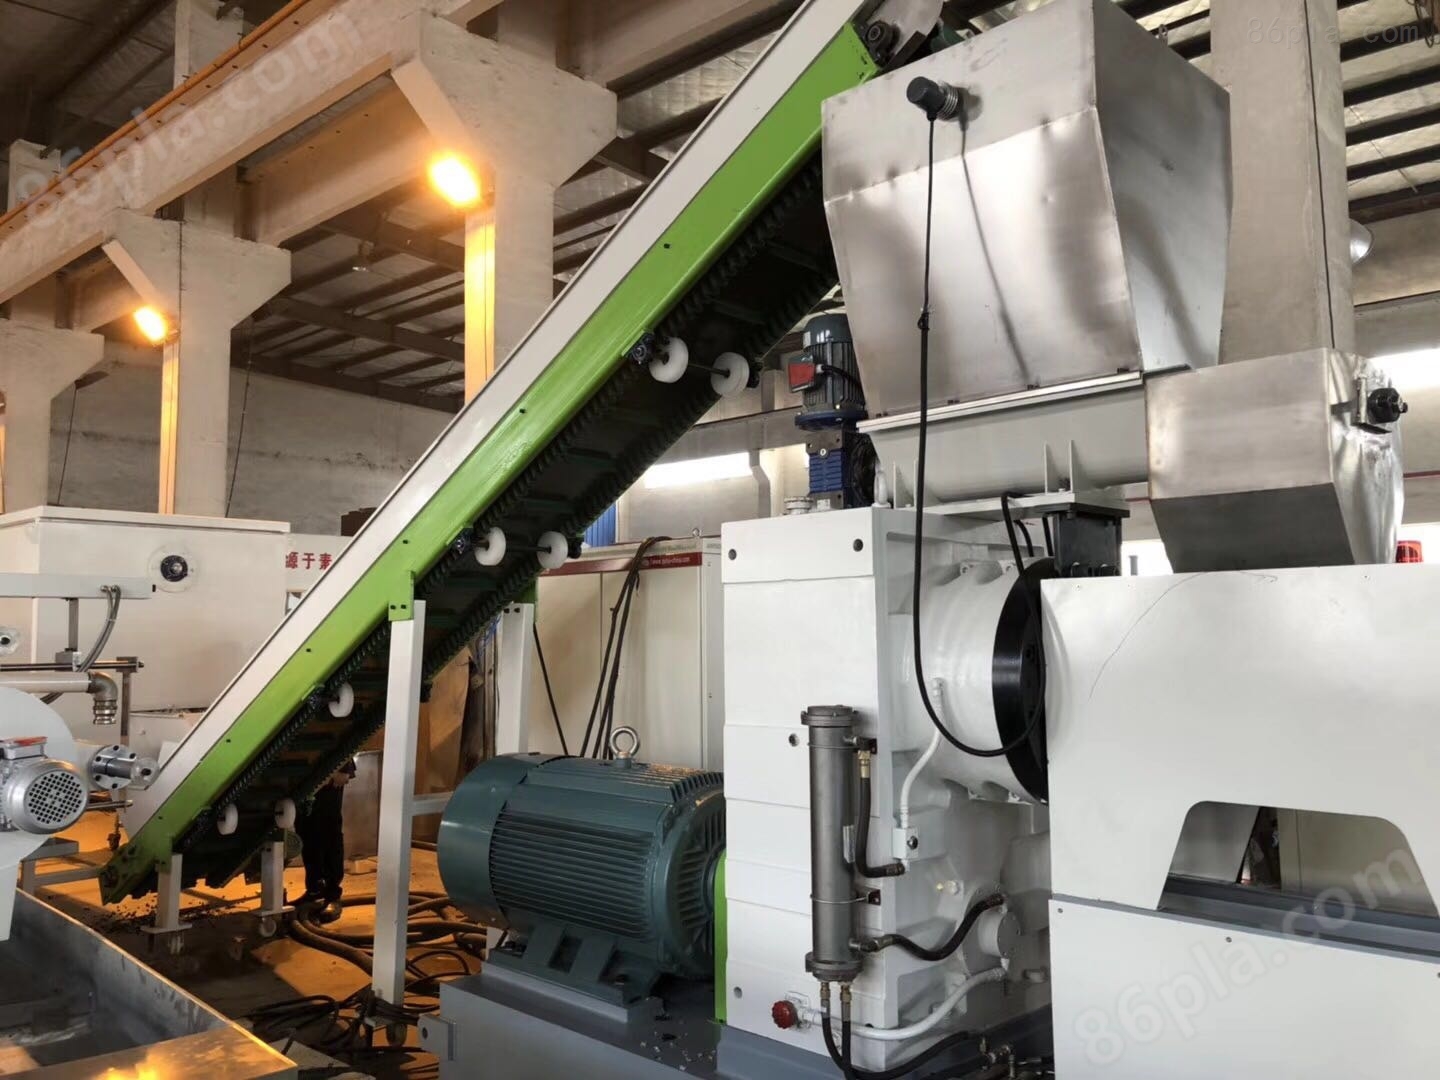 PP编织袋再生回收造粒机-中塑机械研究院